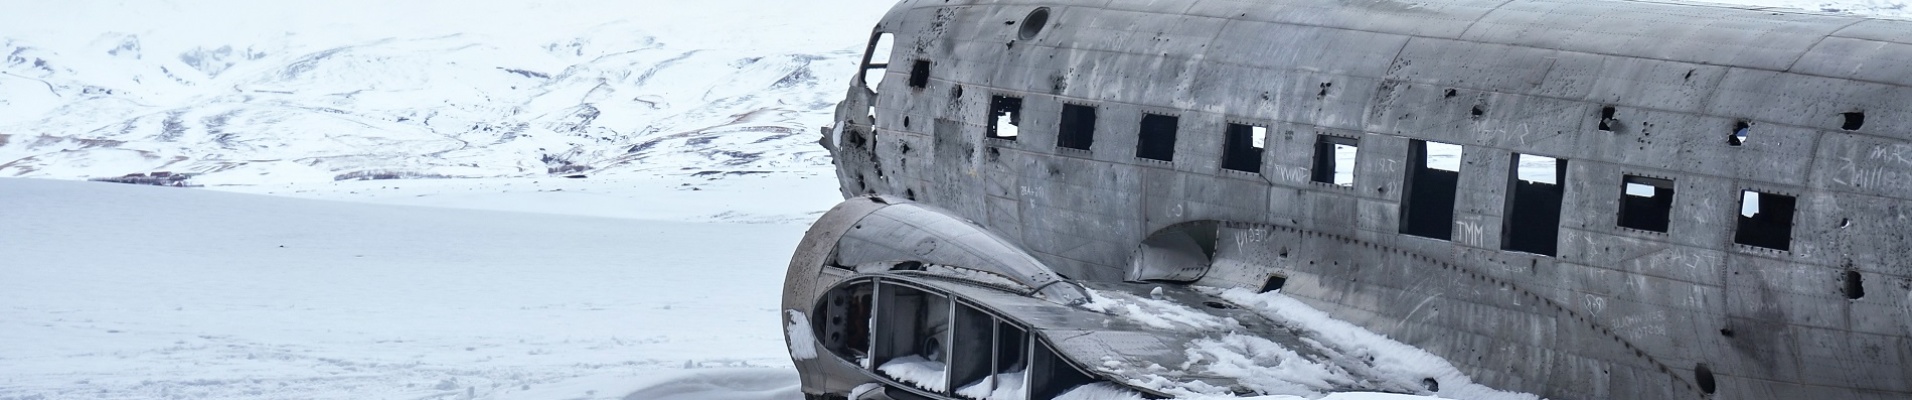 Avion neige Islande